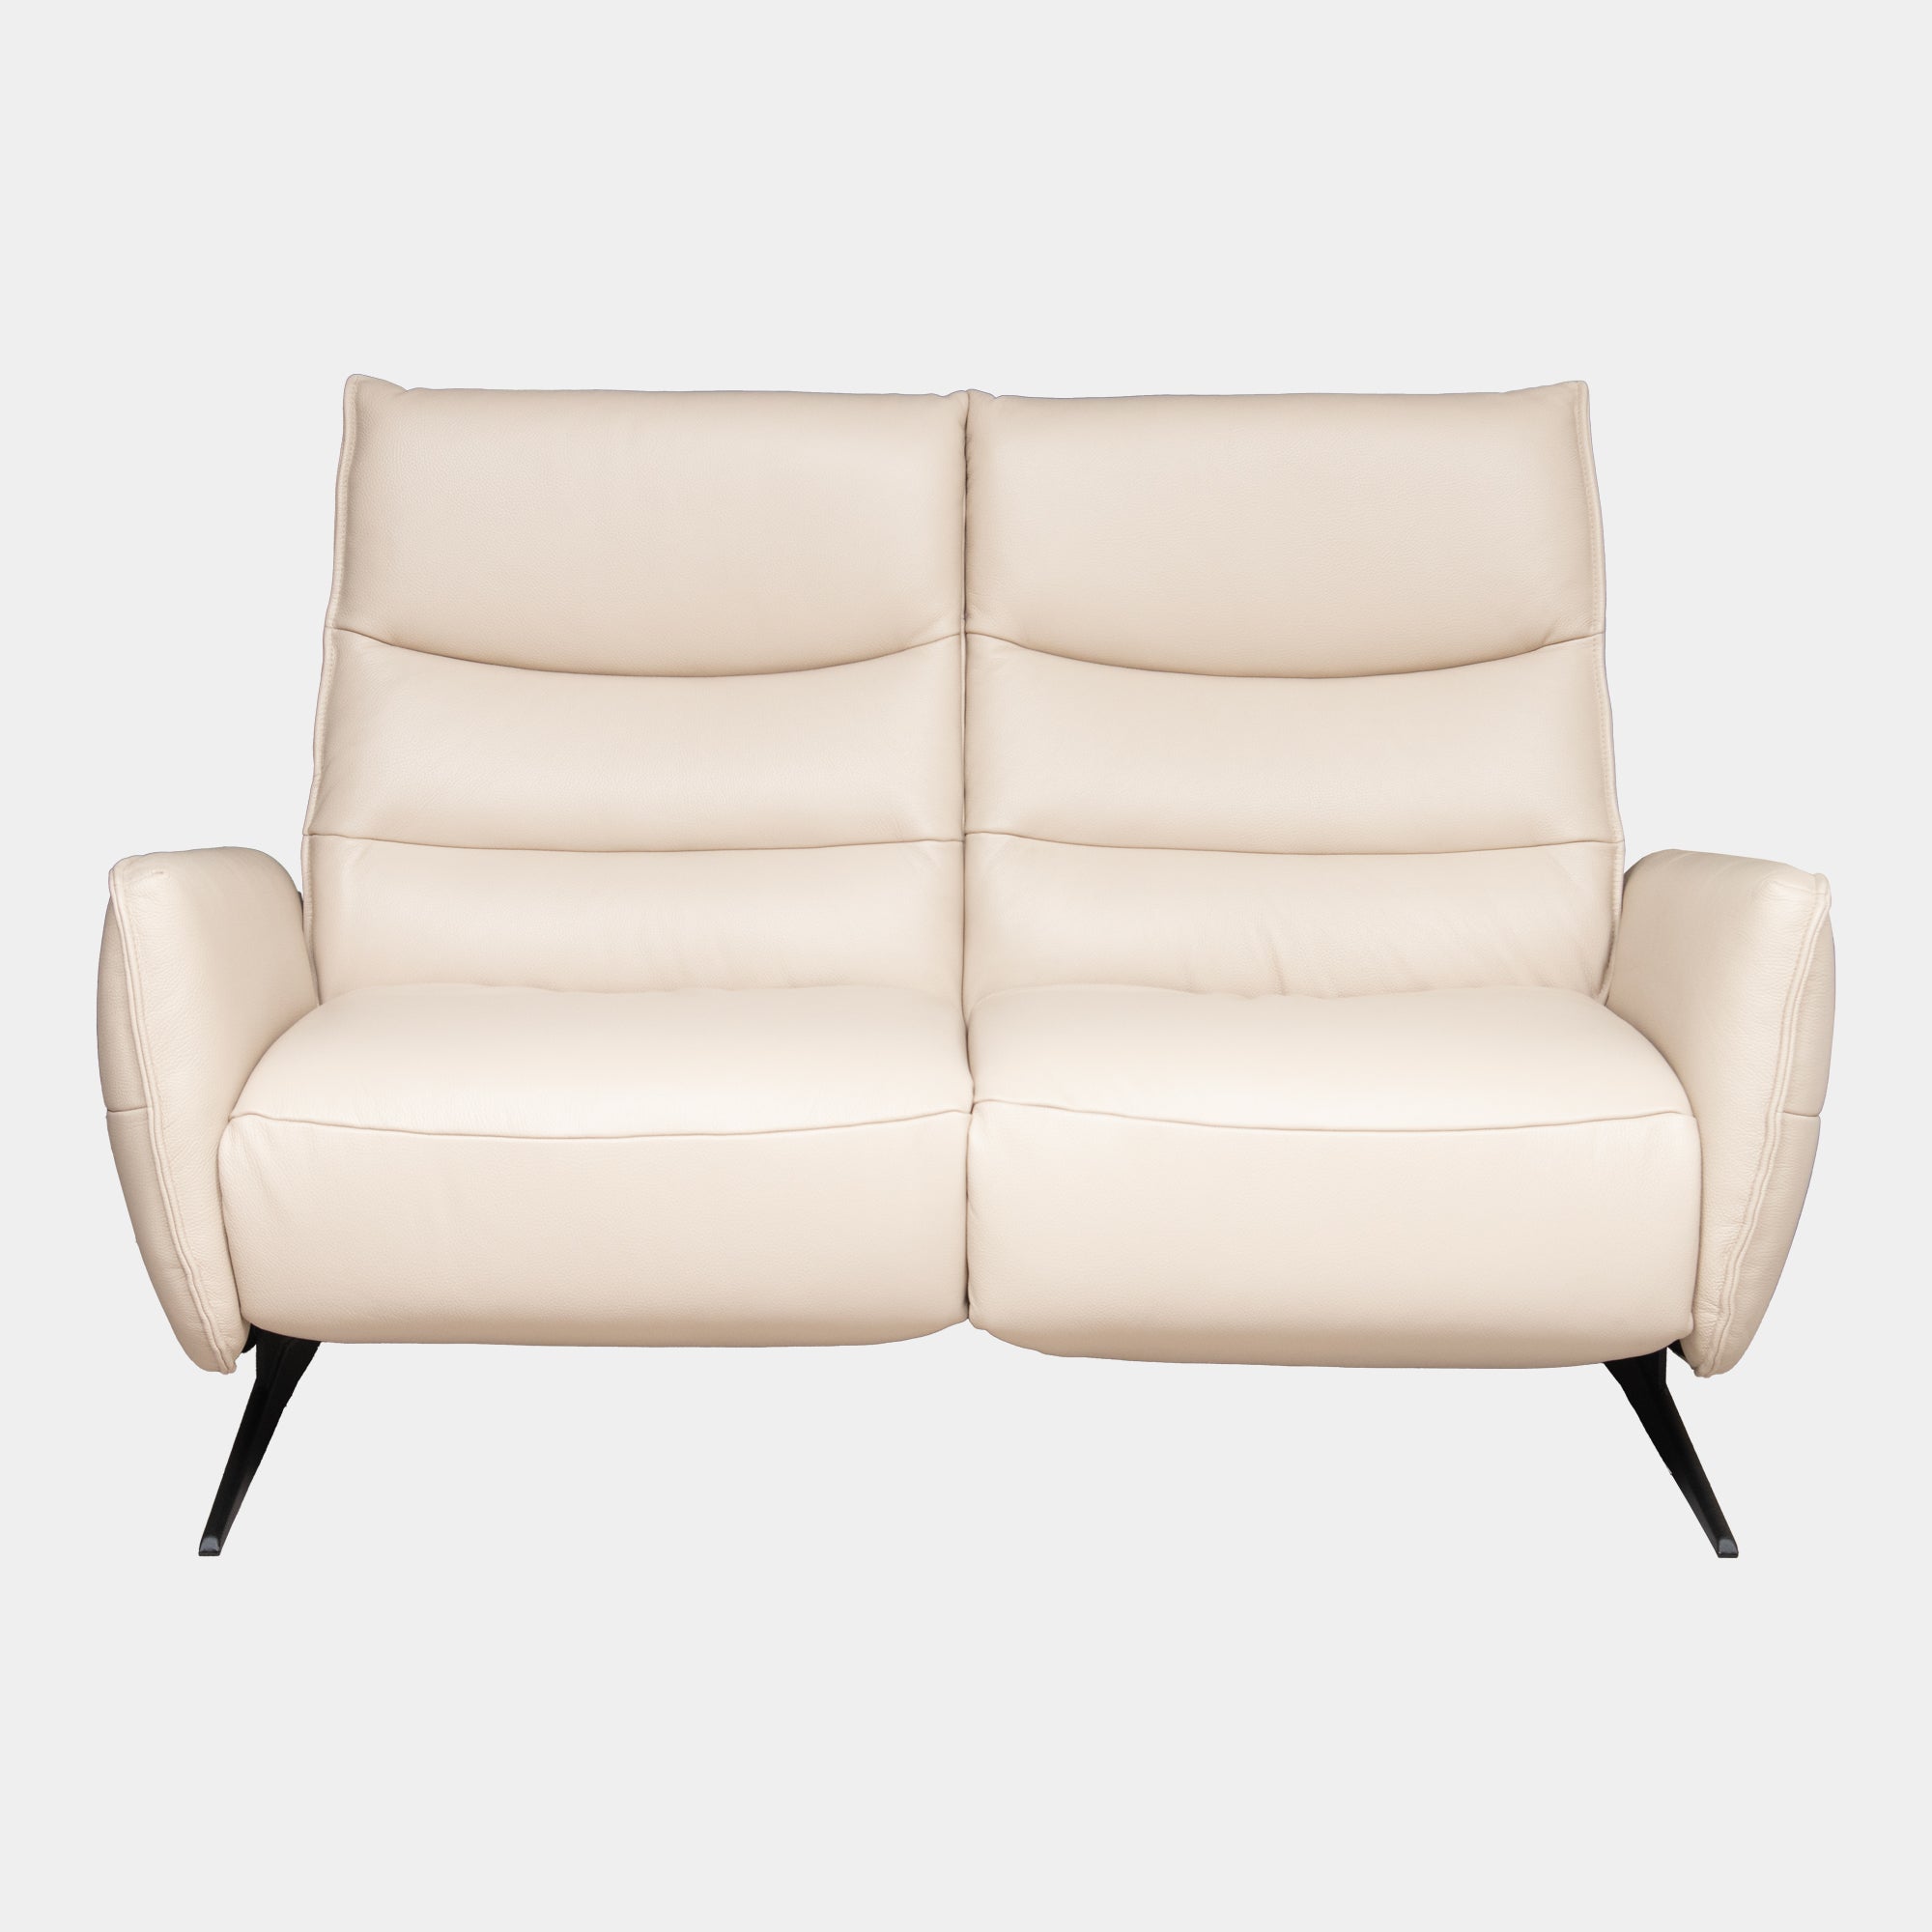 Danube - 2 Seat Manual Recliner Sofa In Leather